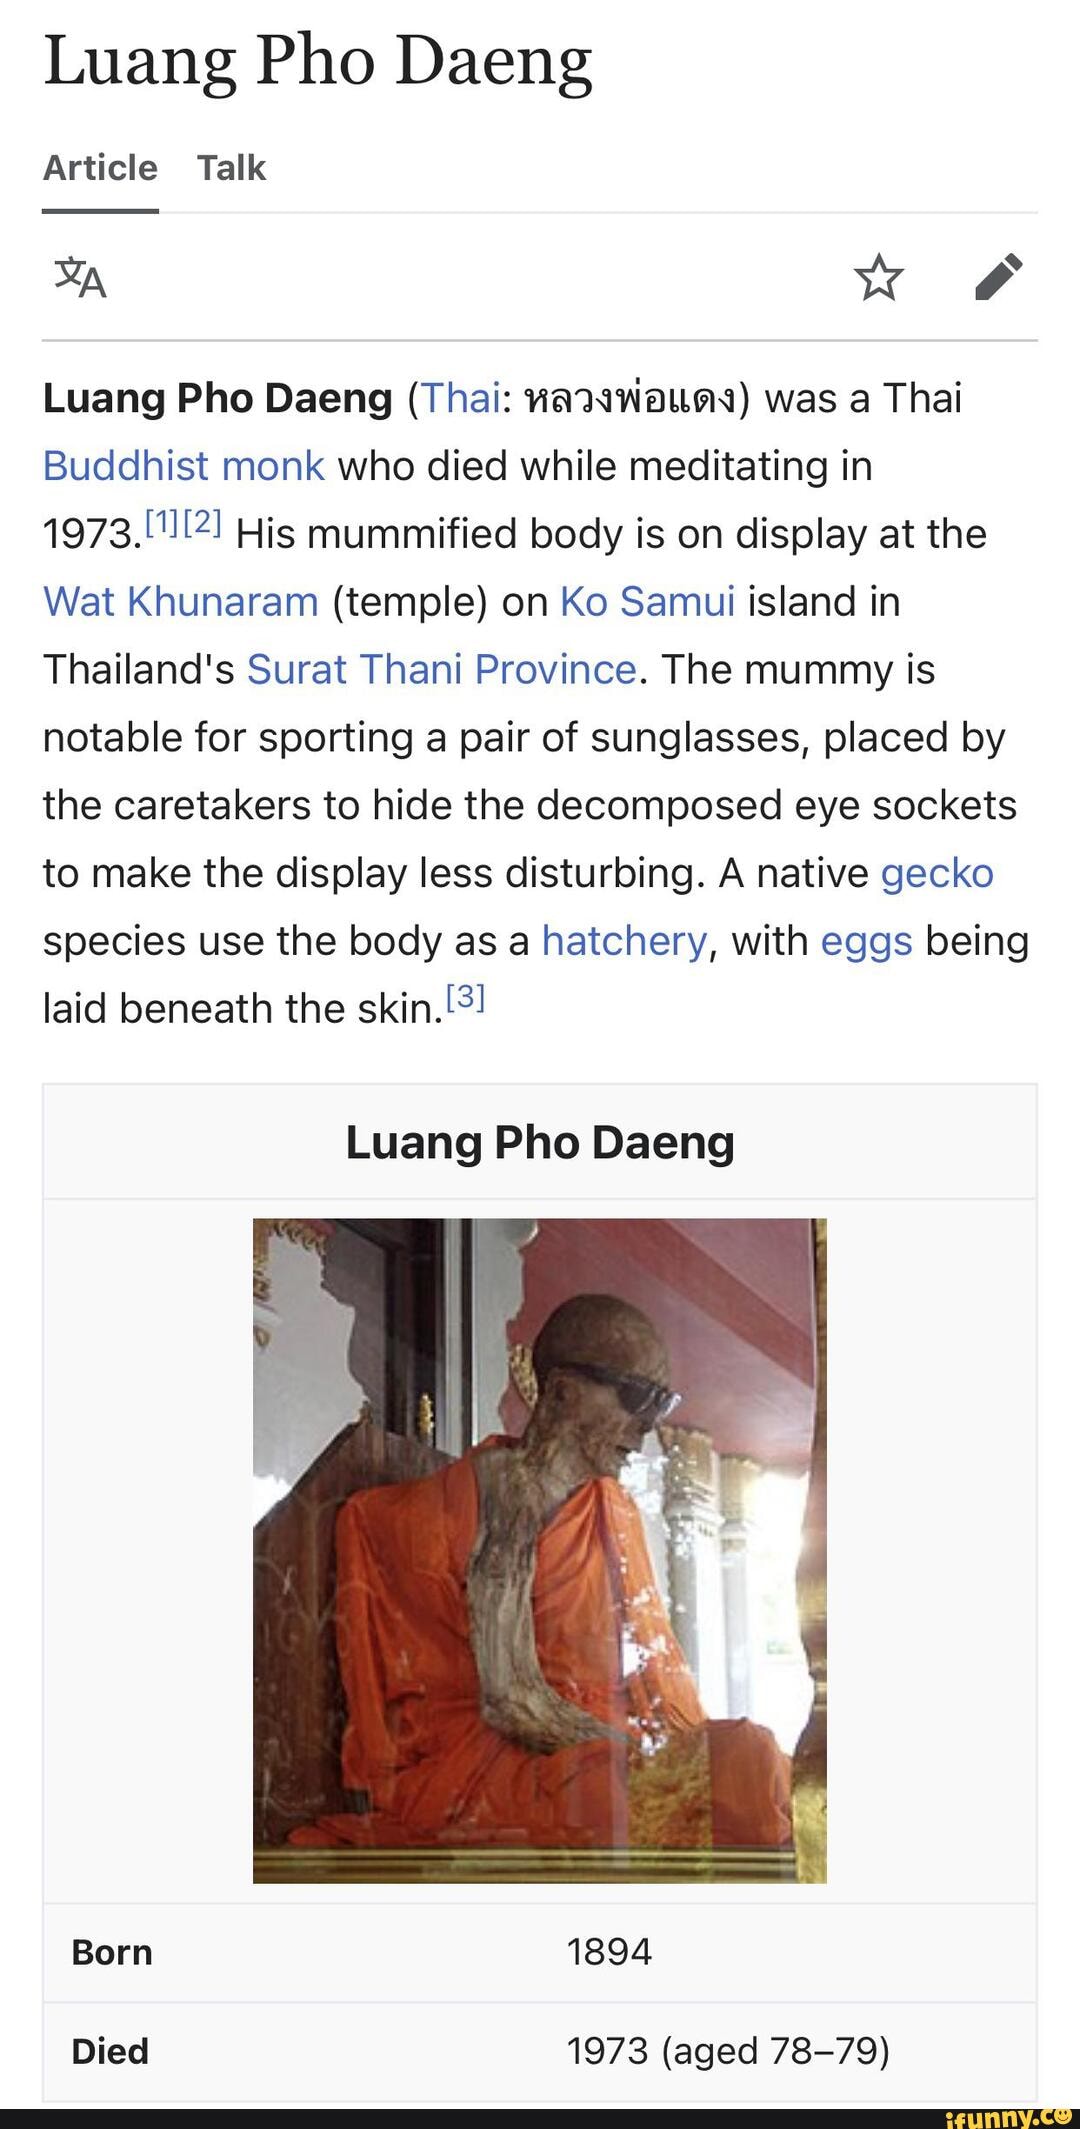 Luang pho daeng alive